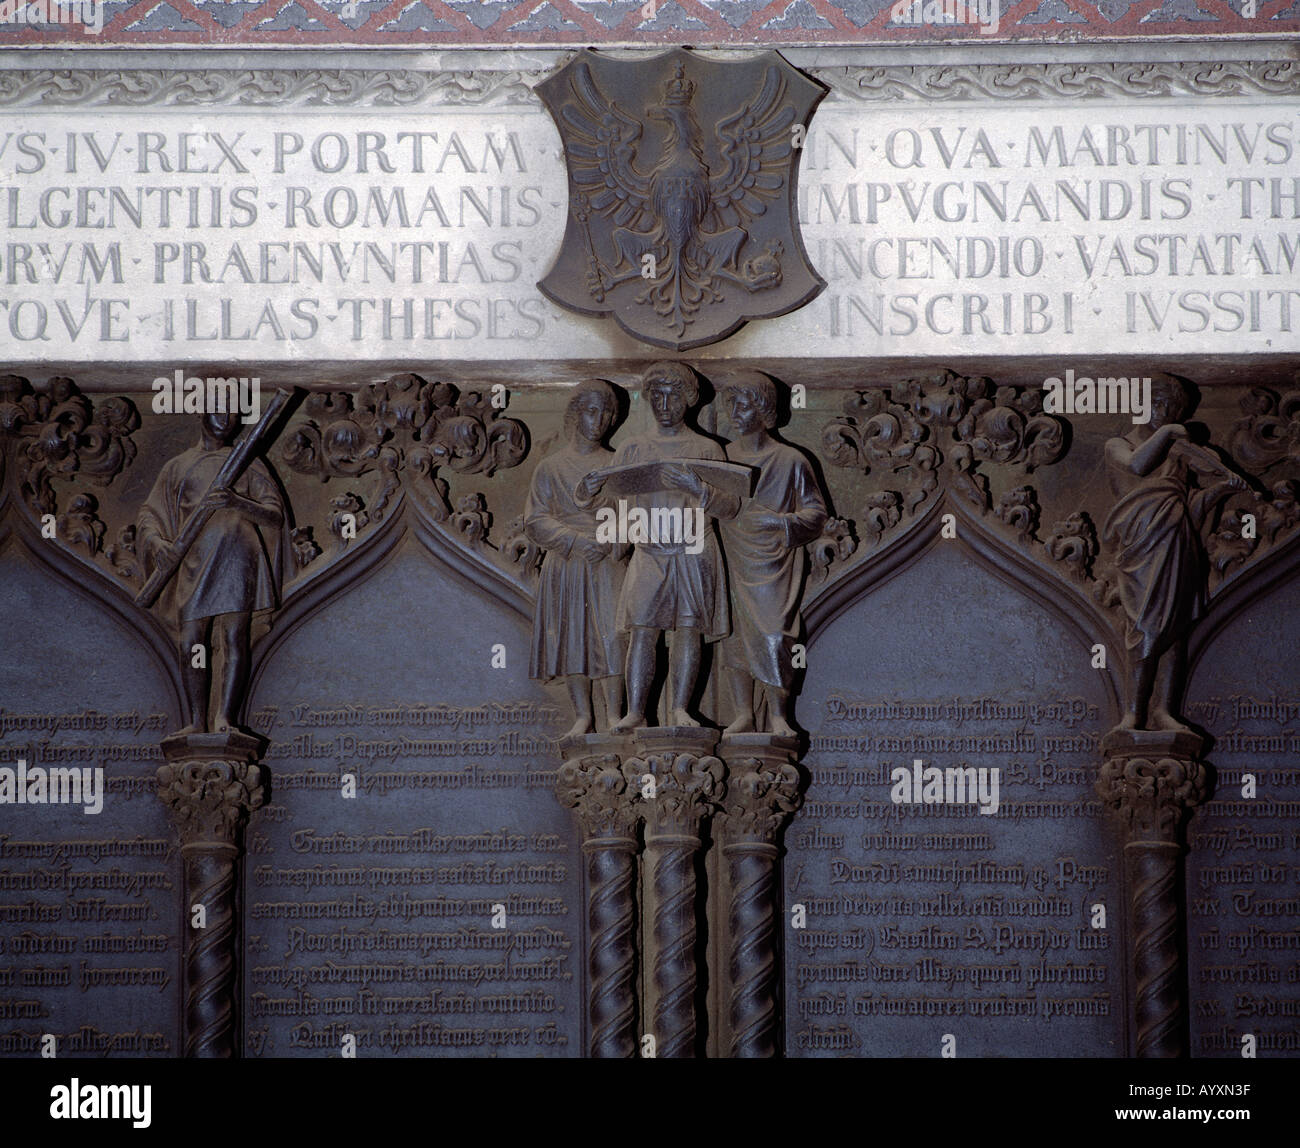 Portal der Schlosskirche, Thesentuer mit den 95 Lutherthesen, Evangelismus, Lutherstadt Wittenberg, Elba, Sachsen-Anhalt Foto Stock